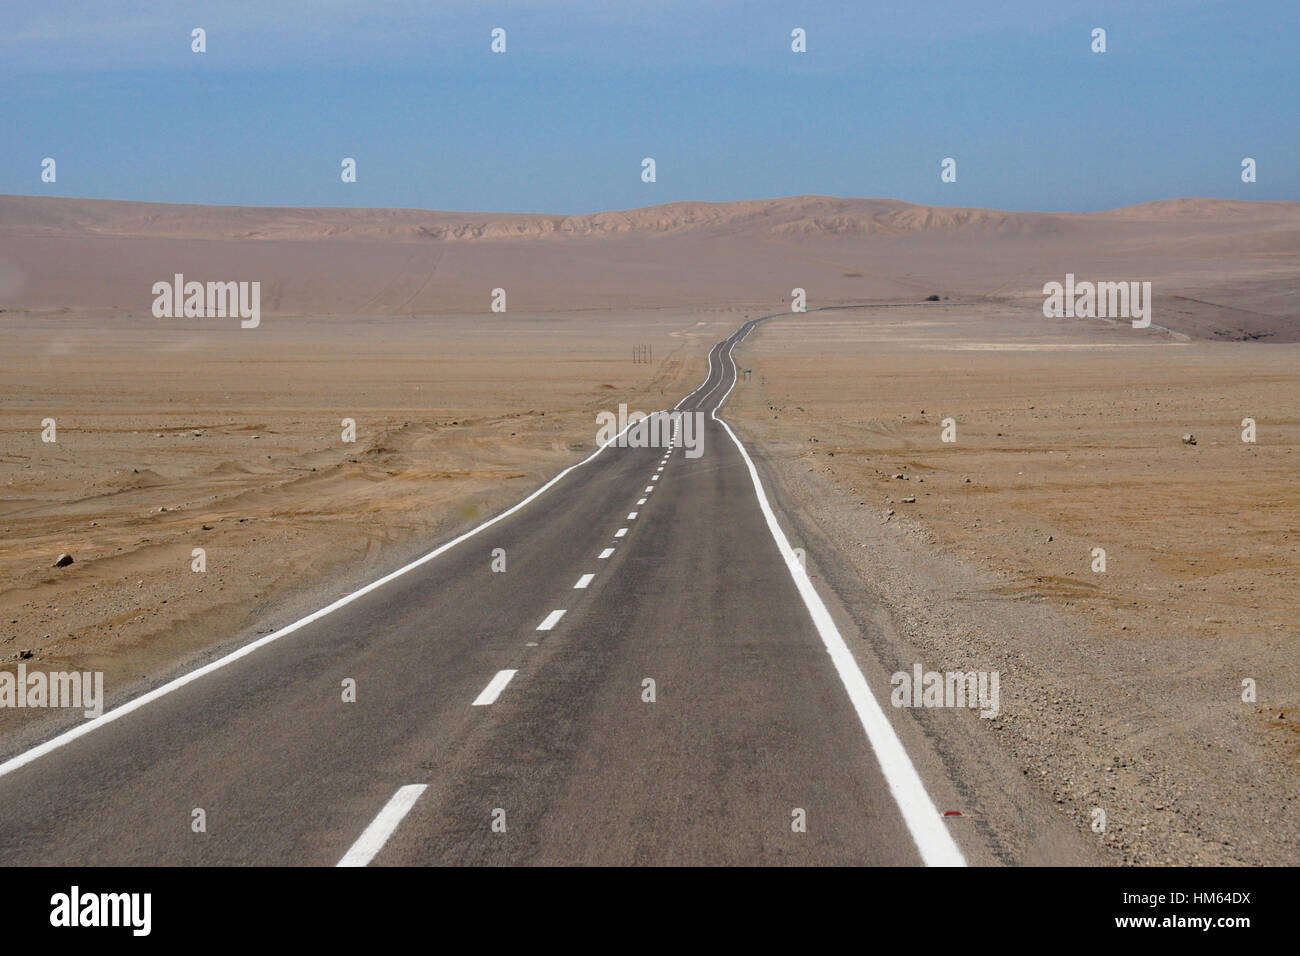 Strada desolata da panamericana di Pisagua, il Deserto di Atacama, Norte Grande del Cile Foto Stock